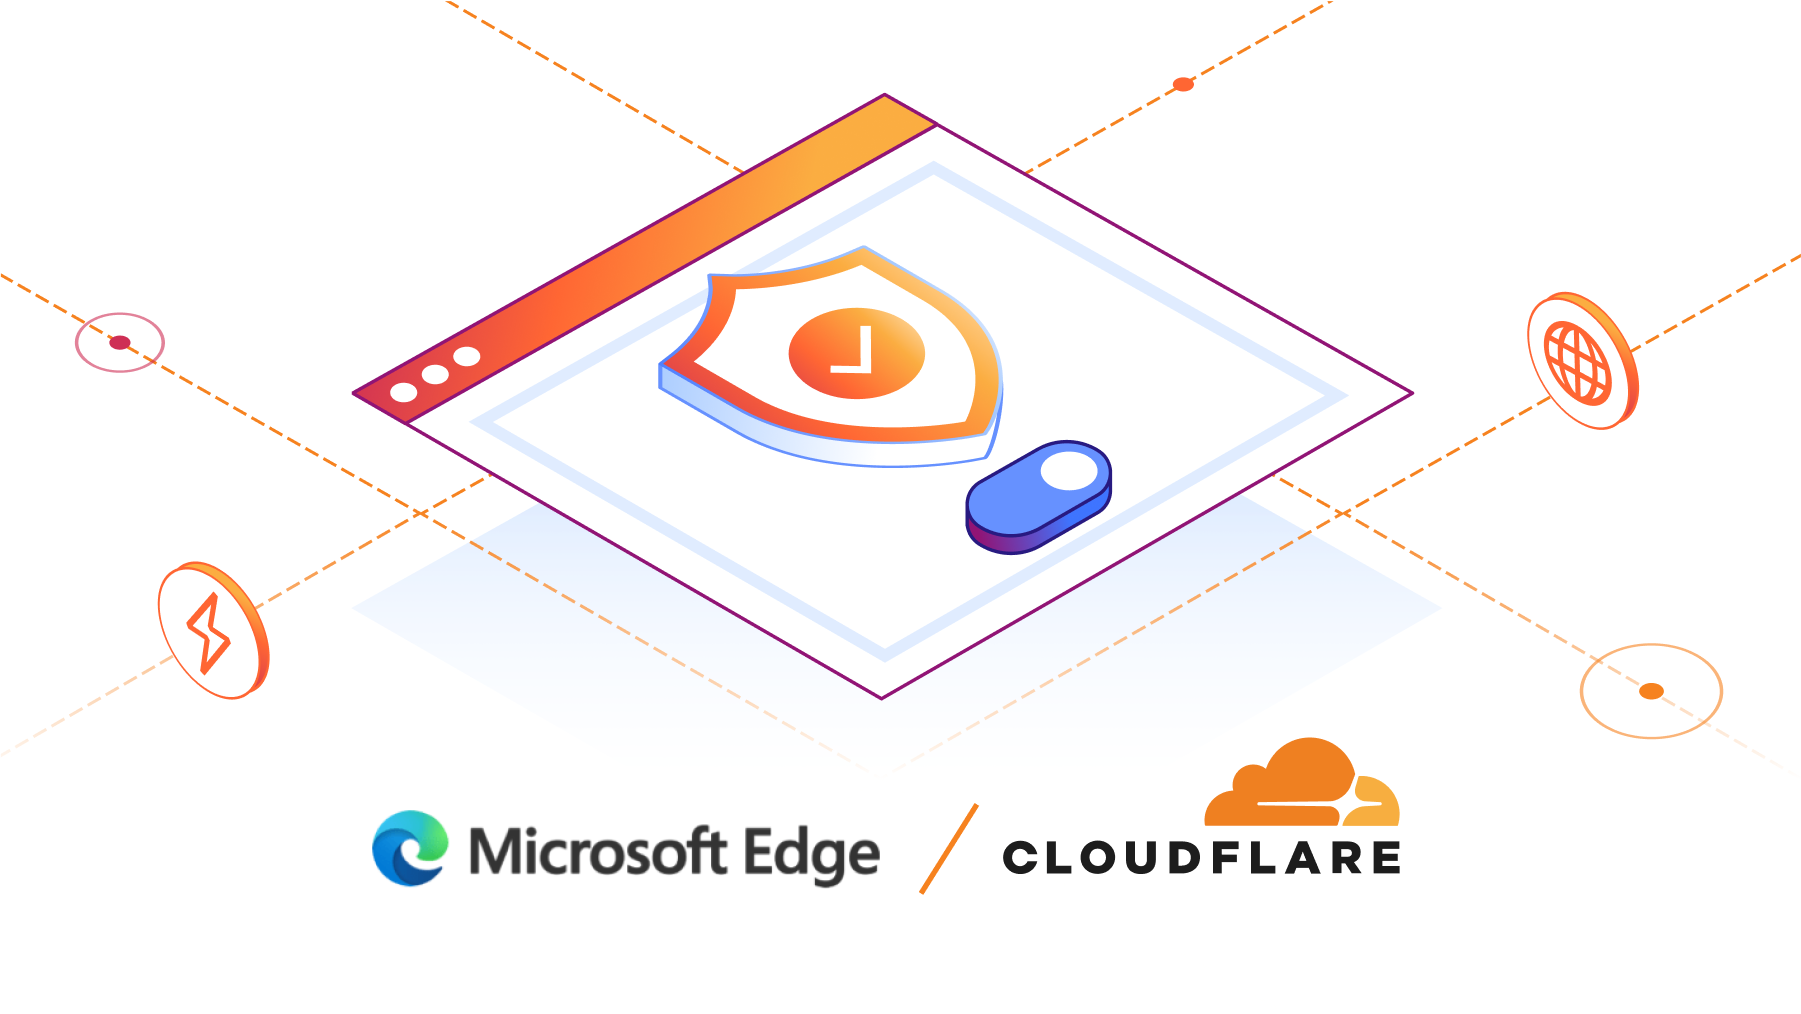 Cloudflare, 이제 Microsoft Edge 보안 네트워크 구동
